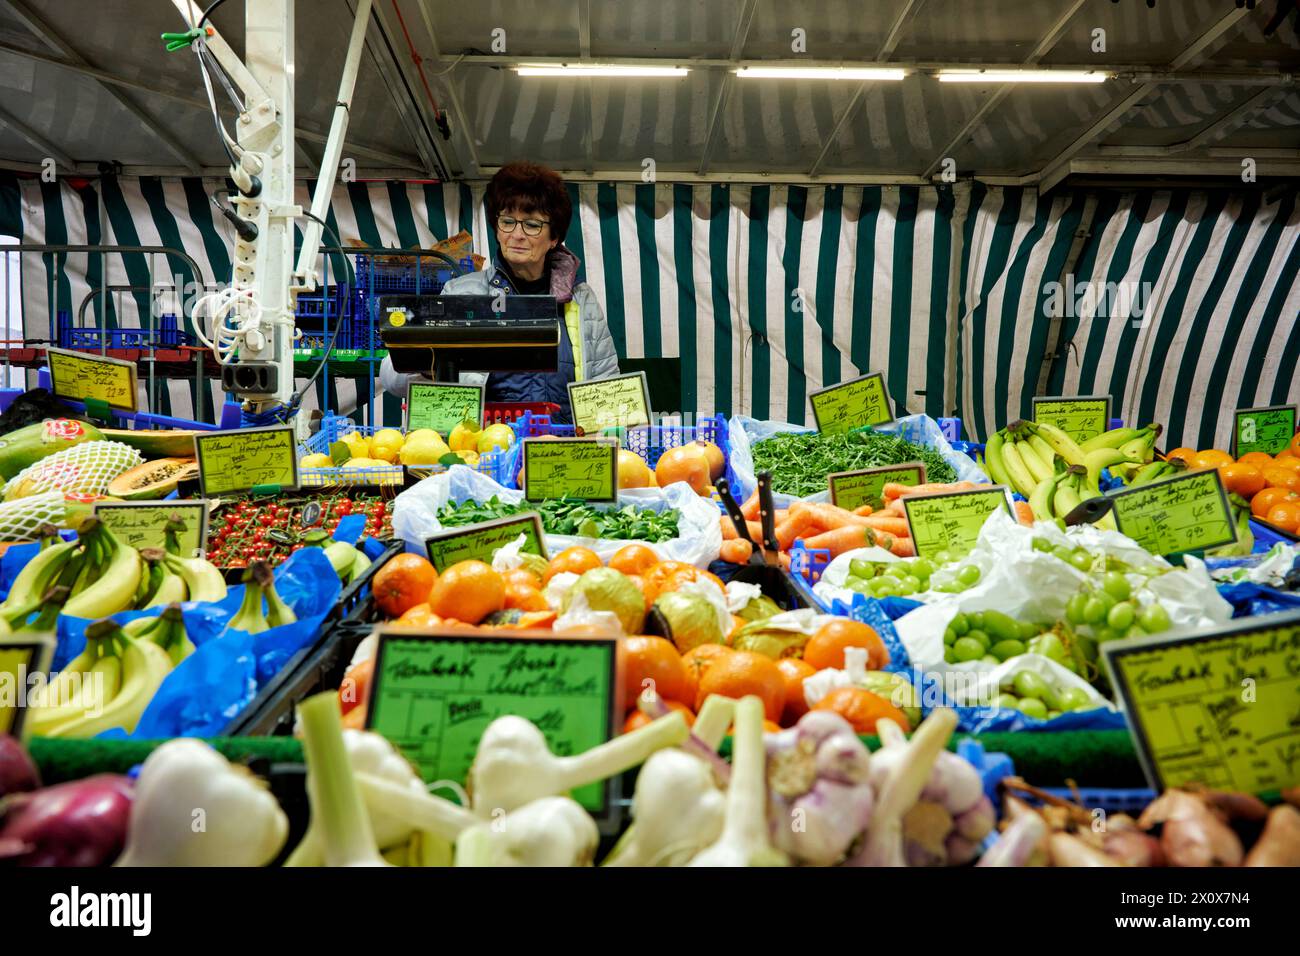 Reichhaltige Obst- und Gemüseauswahl an einem Marktstand. Eine Verkäuferin steht im Hintergrund an einer Waage und wiegt aus. Banque D'Images